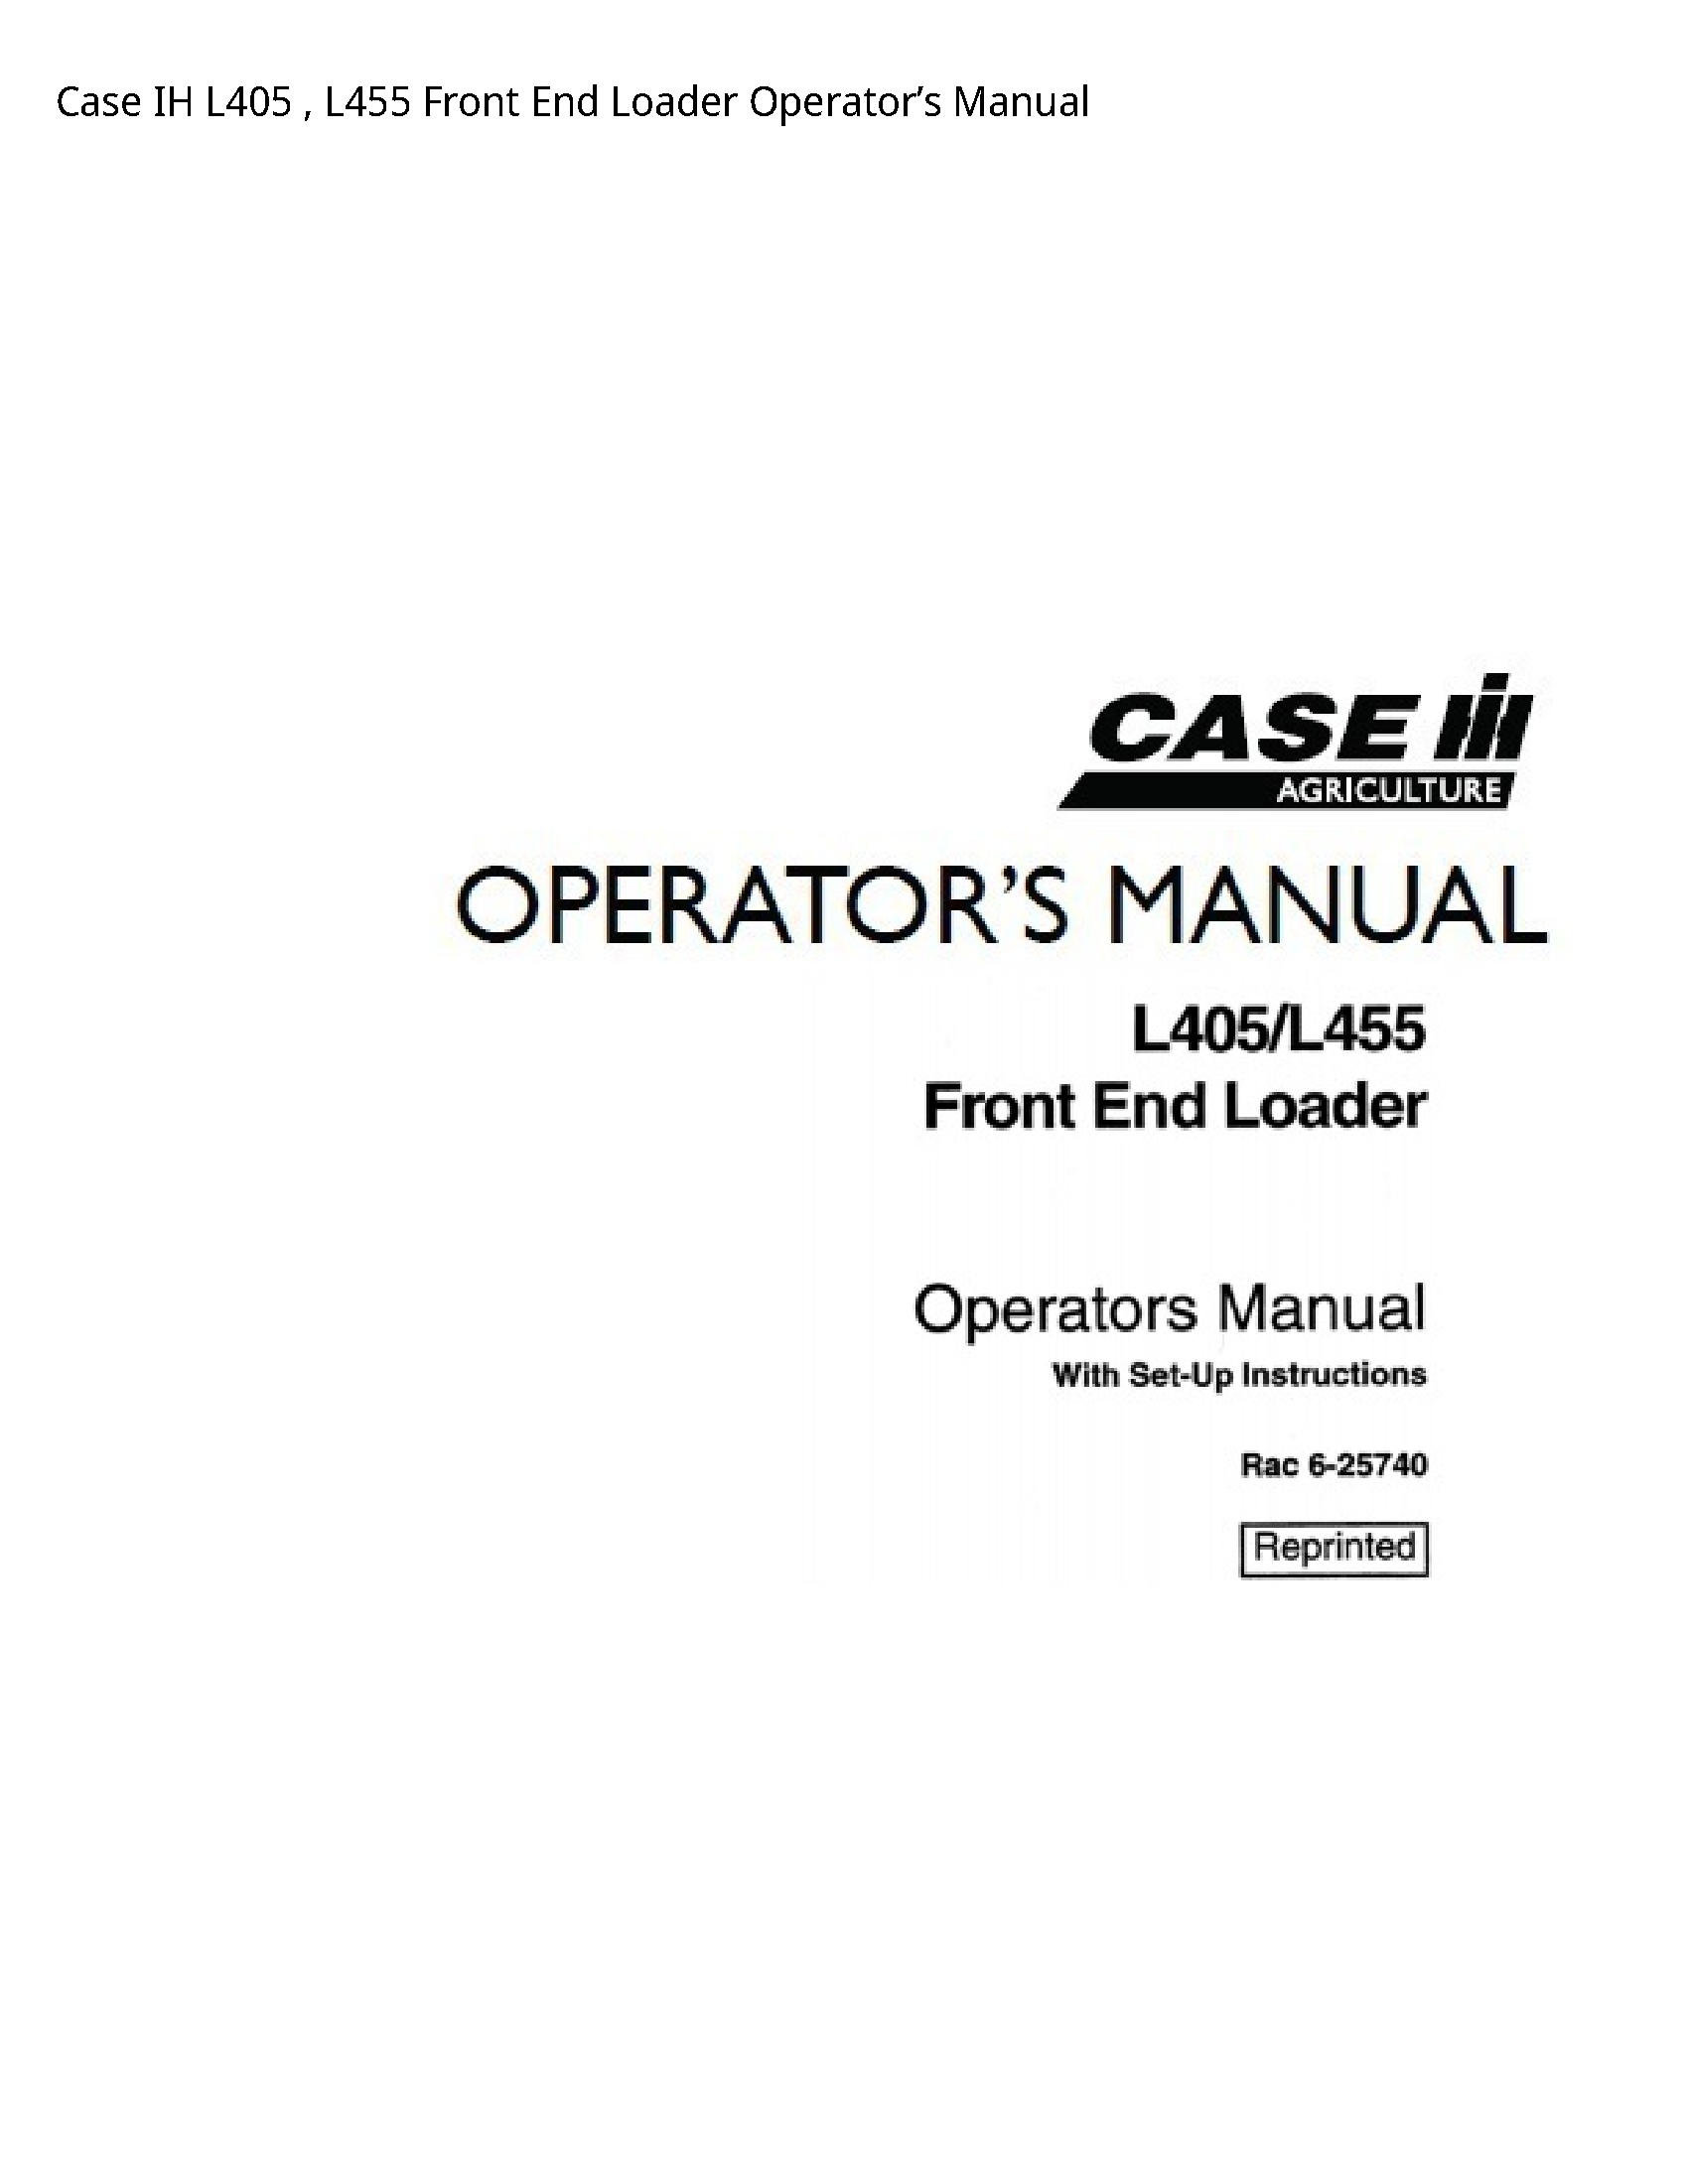 Case/Case IH L405 IH Front End Loader Operator’s manual